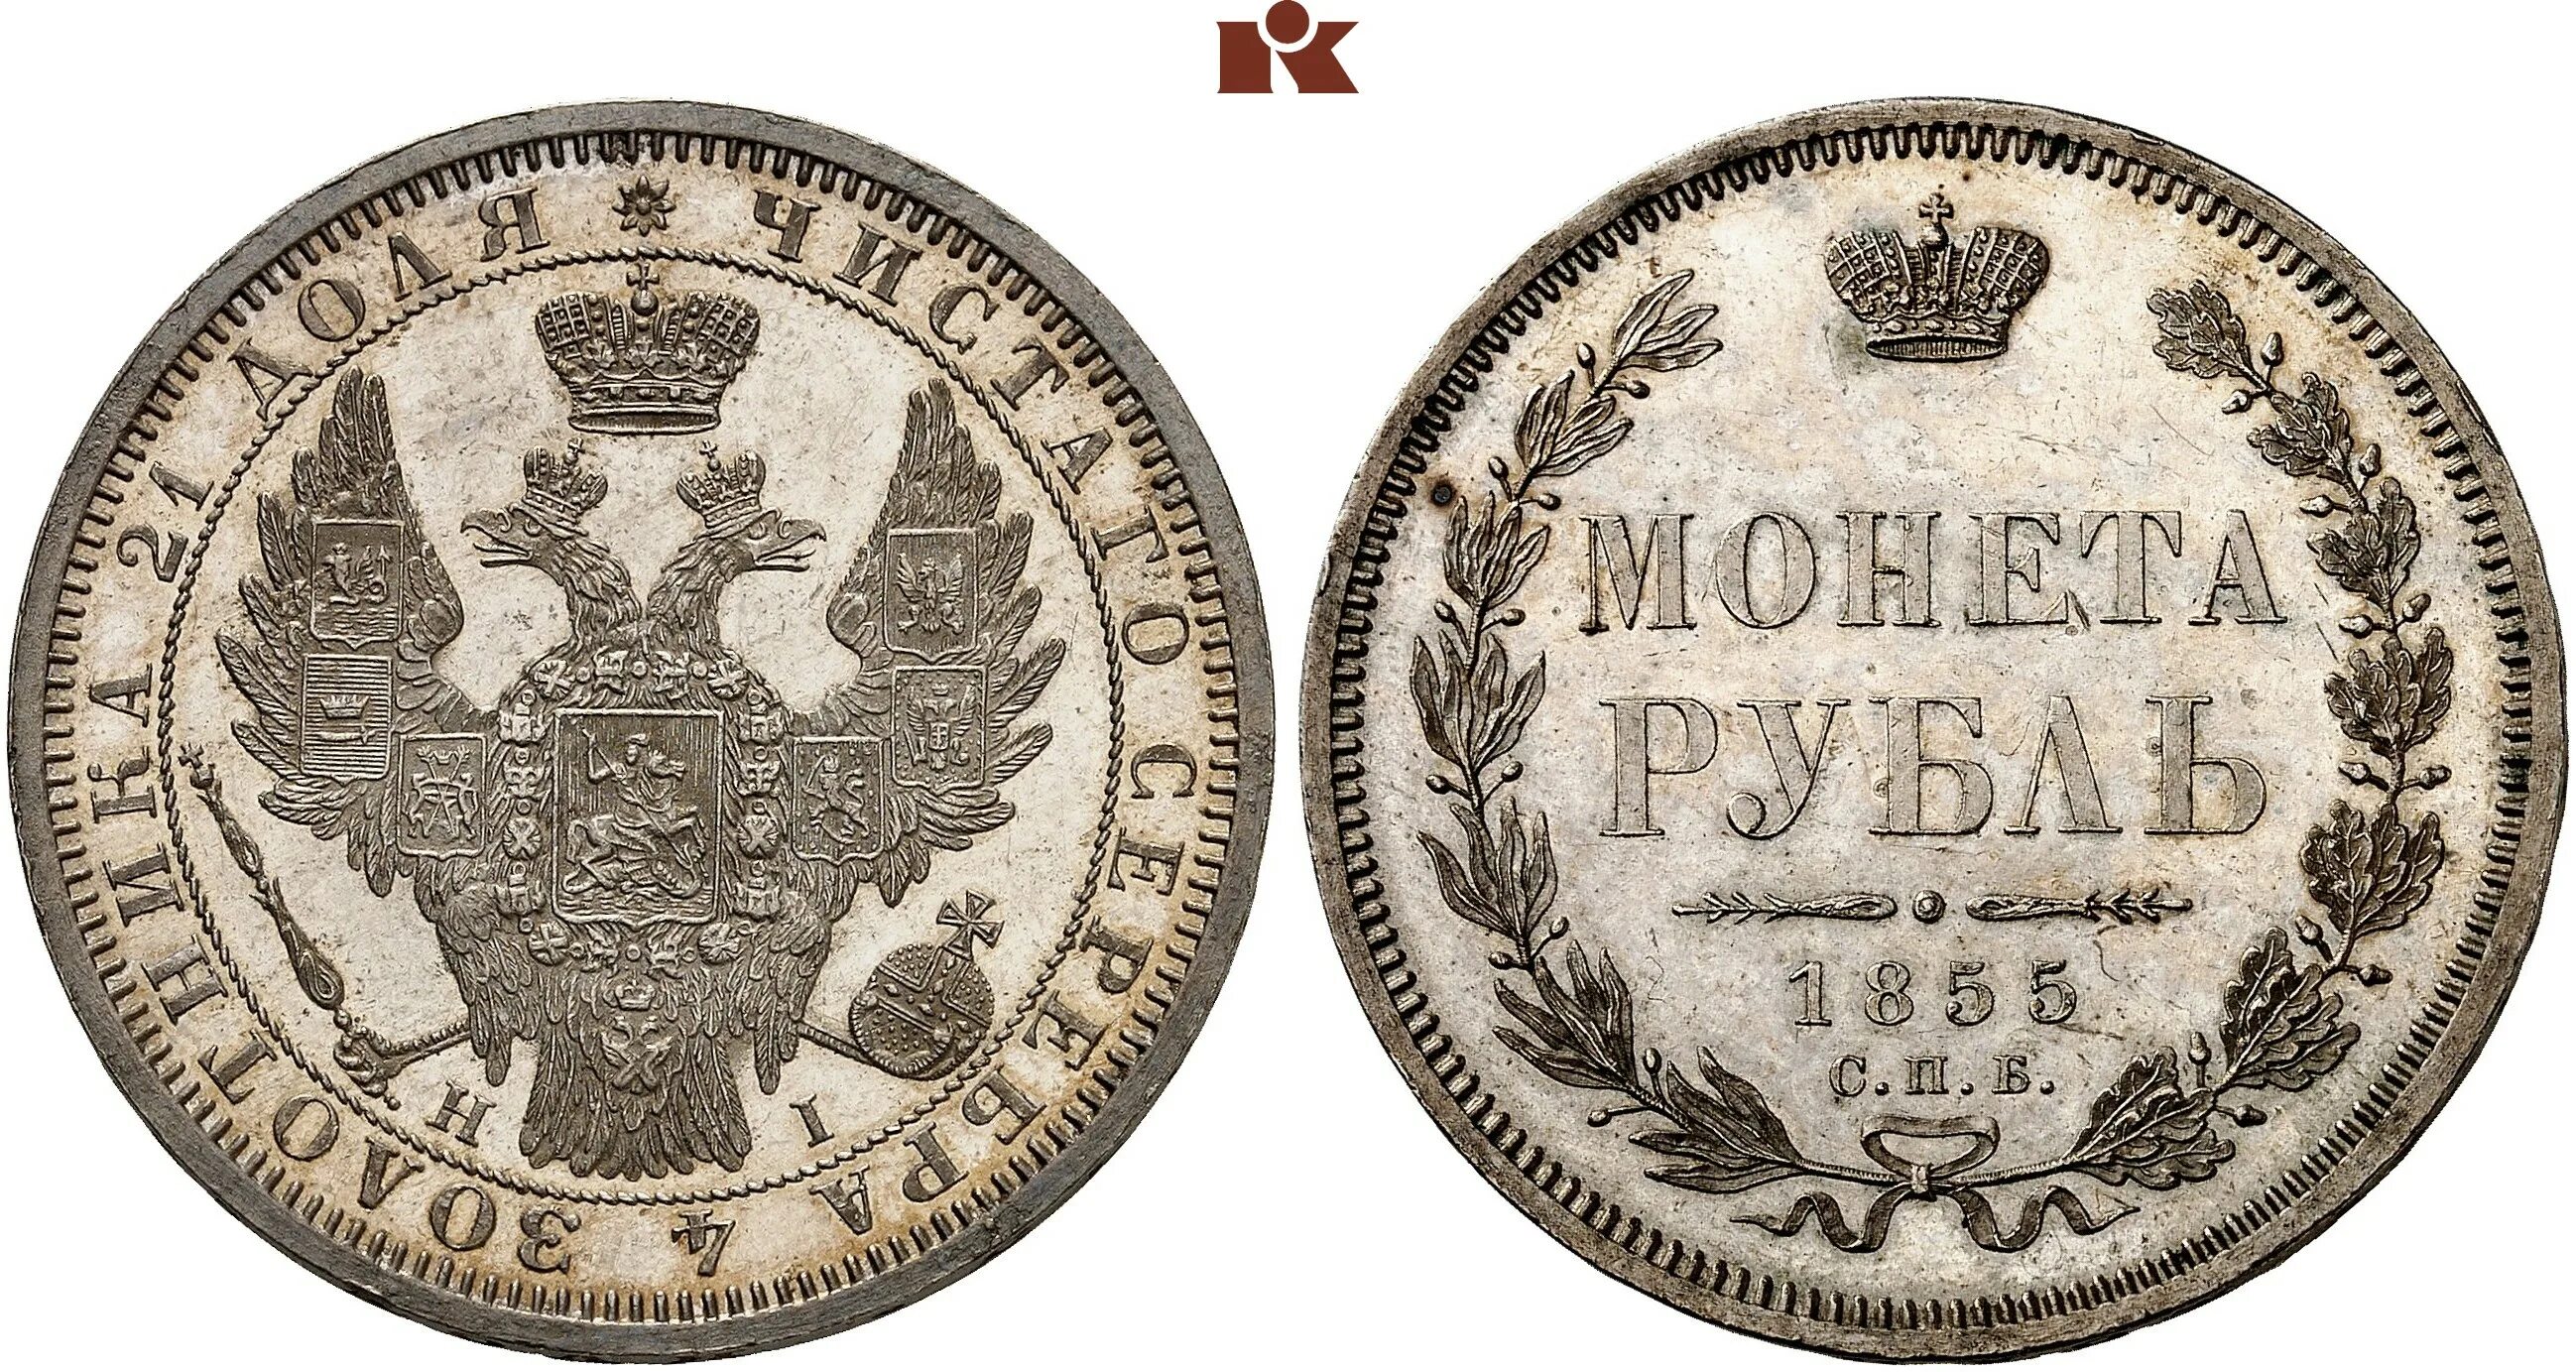 5 рублей серебром. Монета рубль 1856.